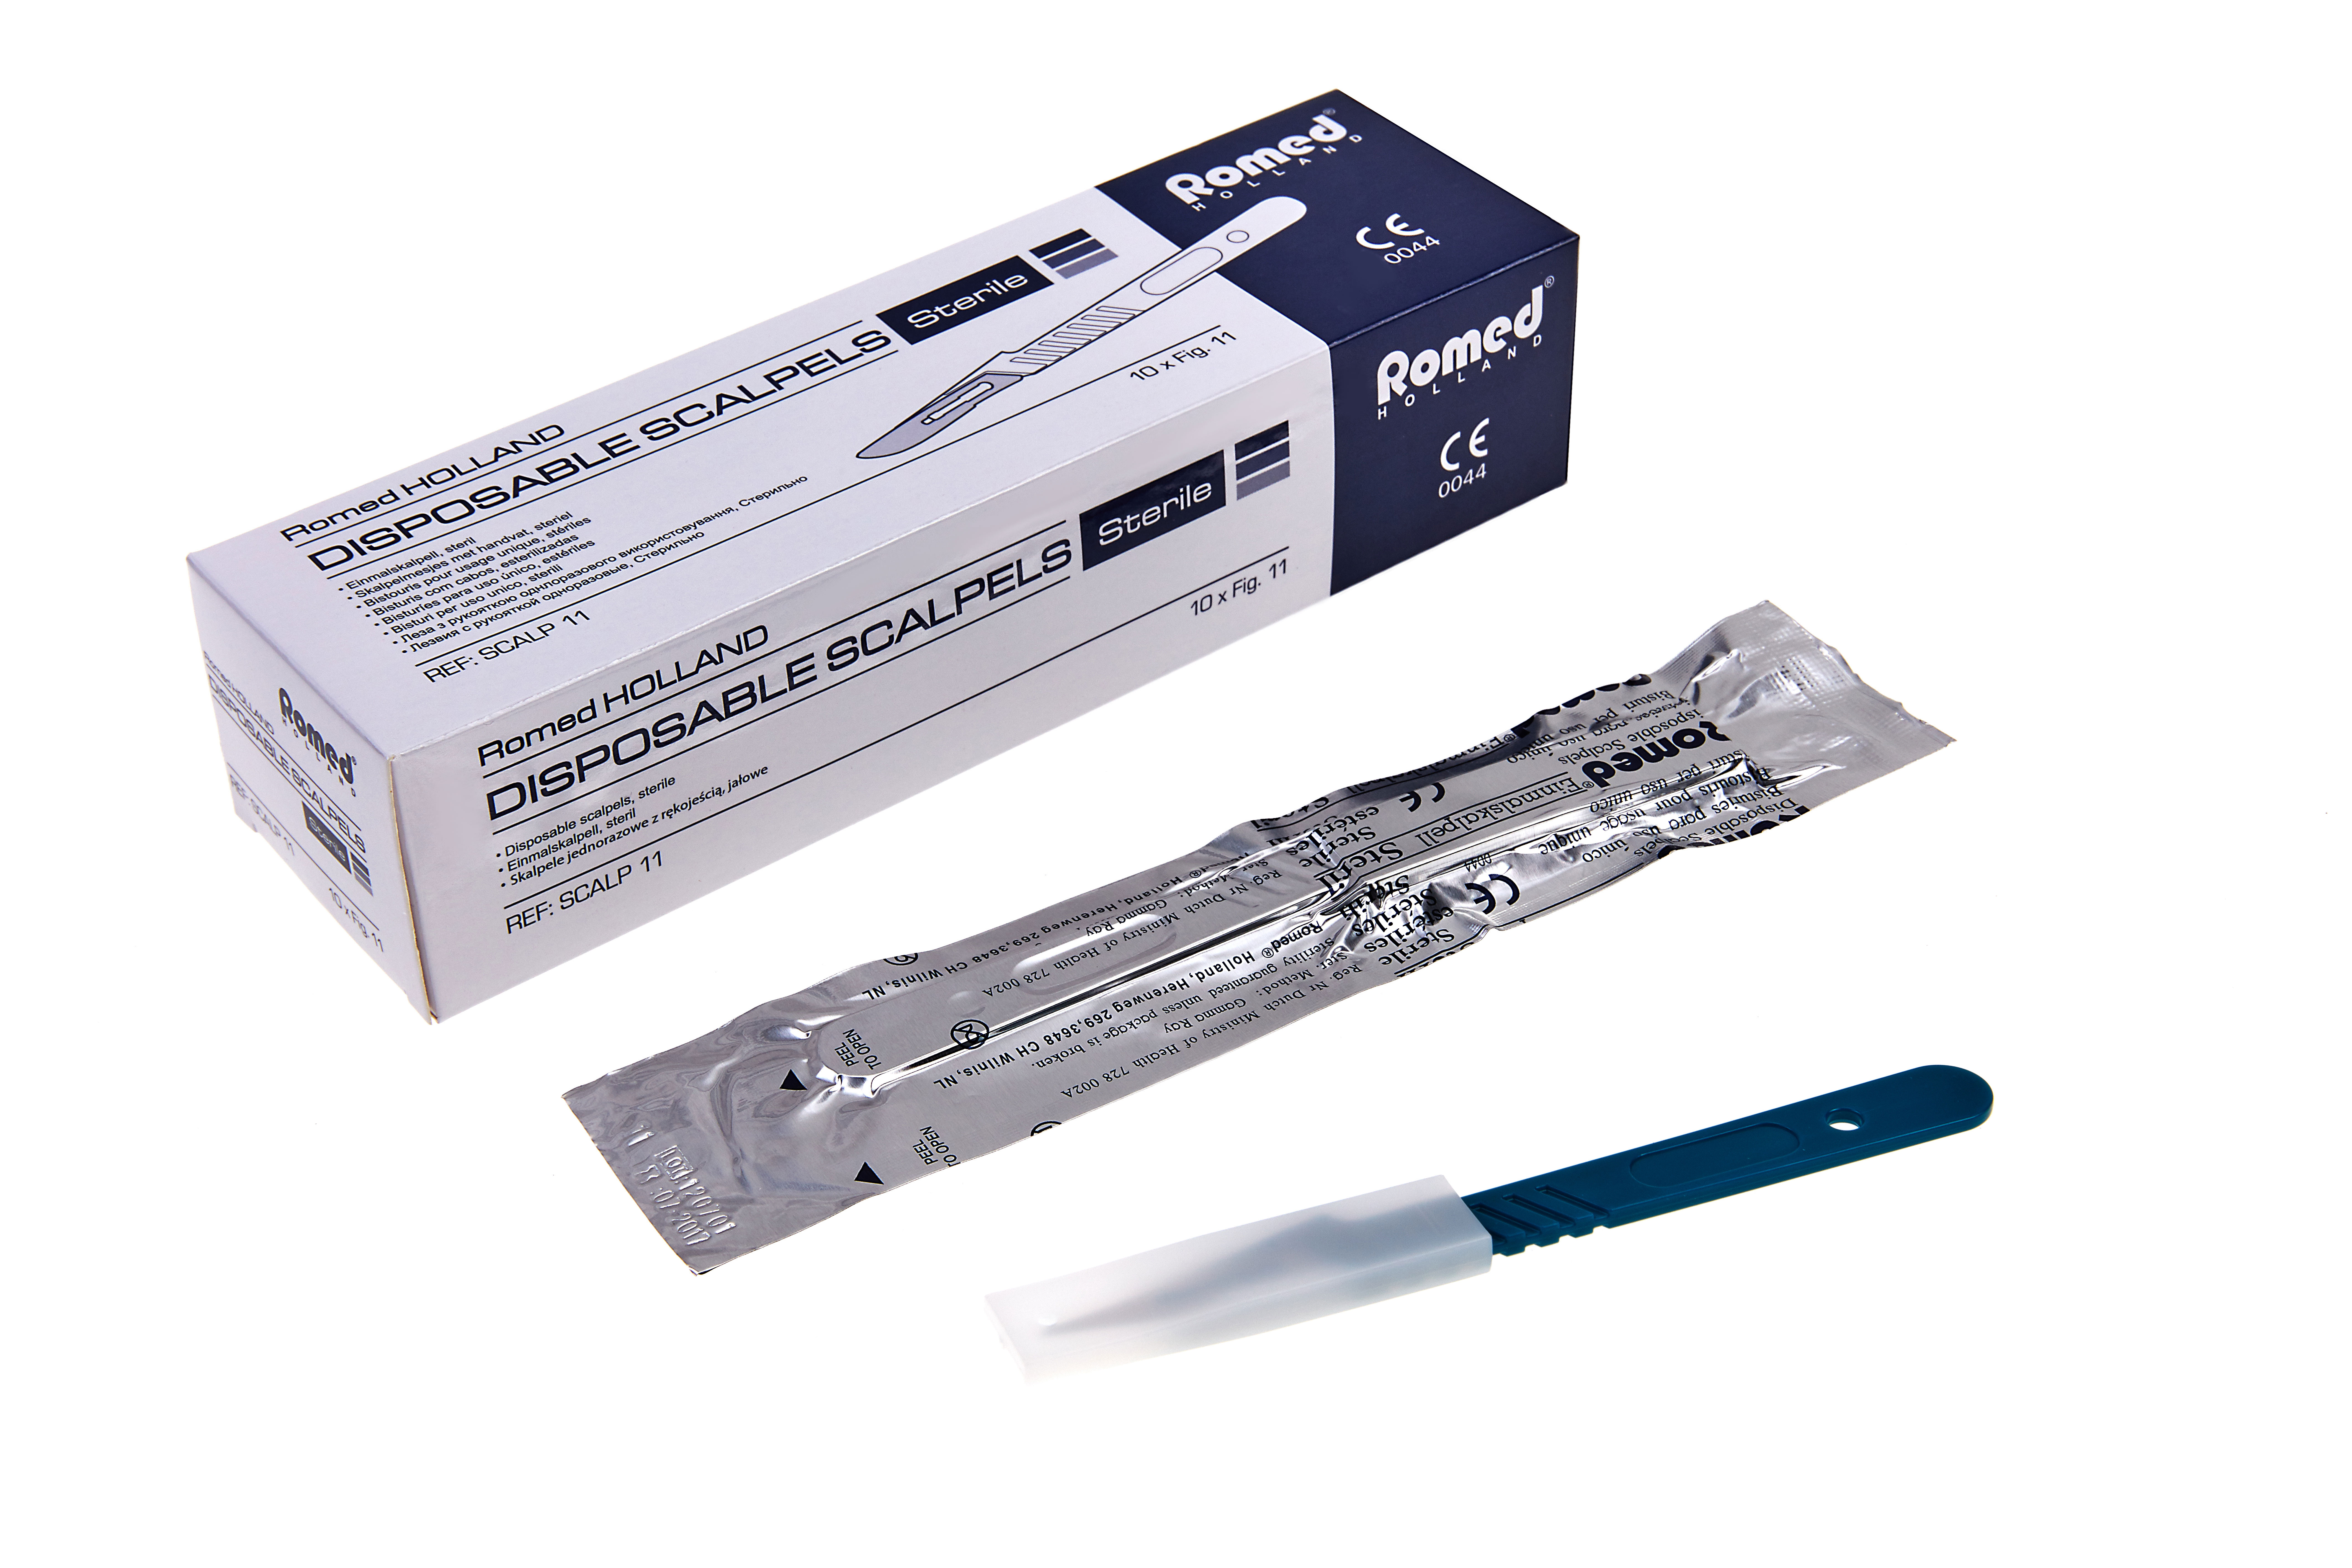 SCALP-10 Romed scalpelmesjes compleet met handvat, steriel per stuk, 10 stuks in een doosje, 50 x 10 stuks = 500 stuks in een karton.